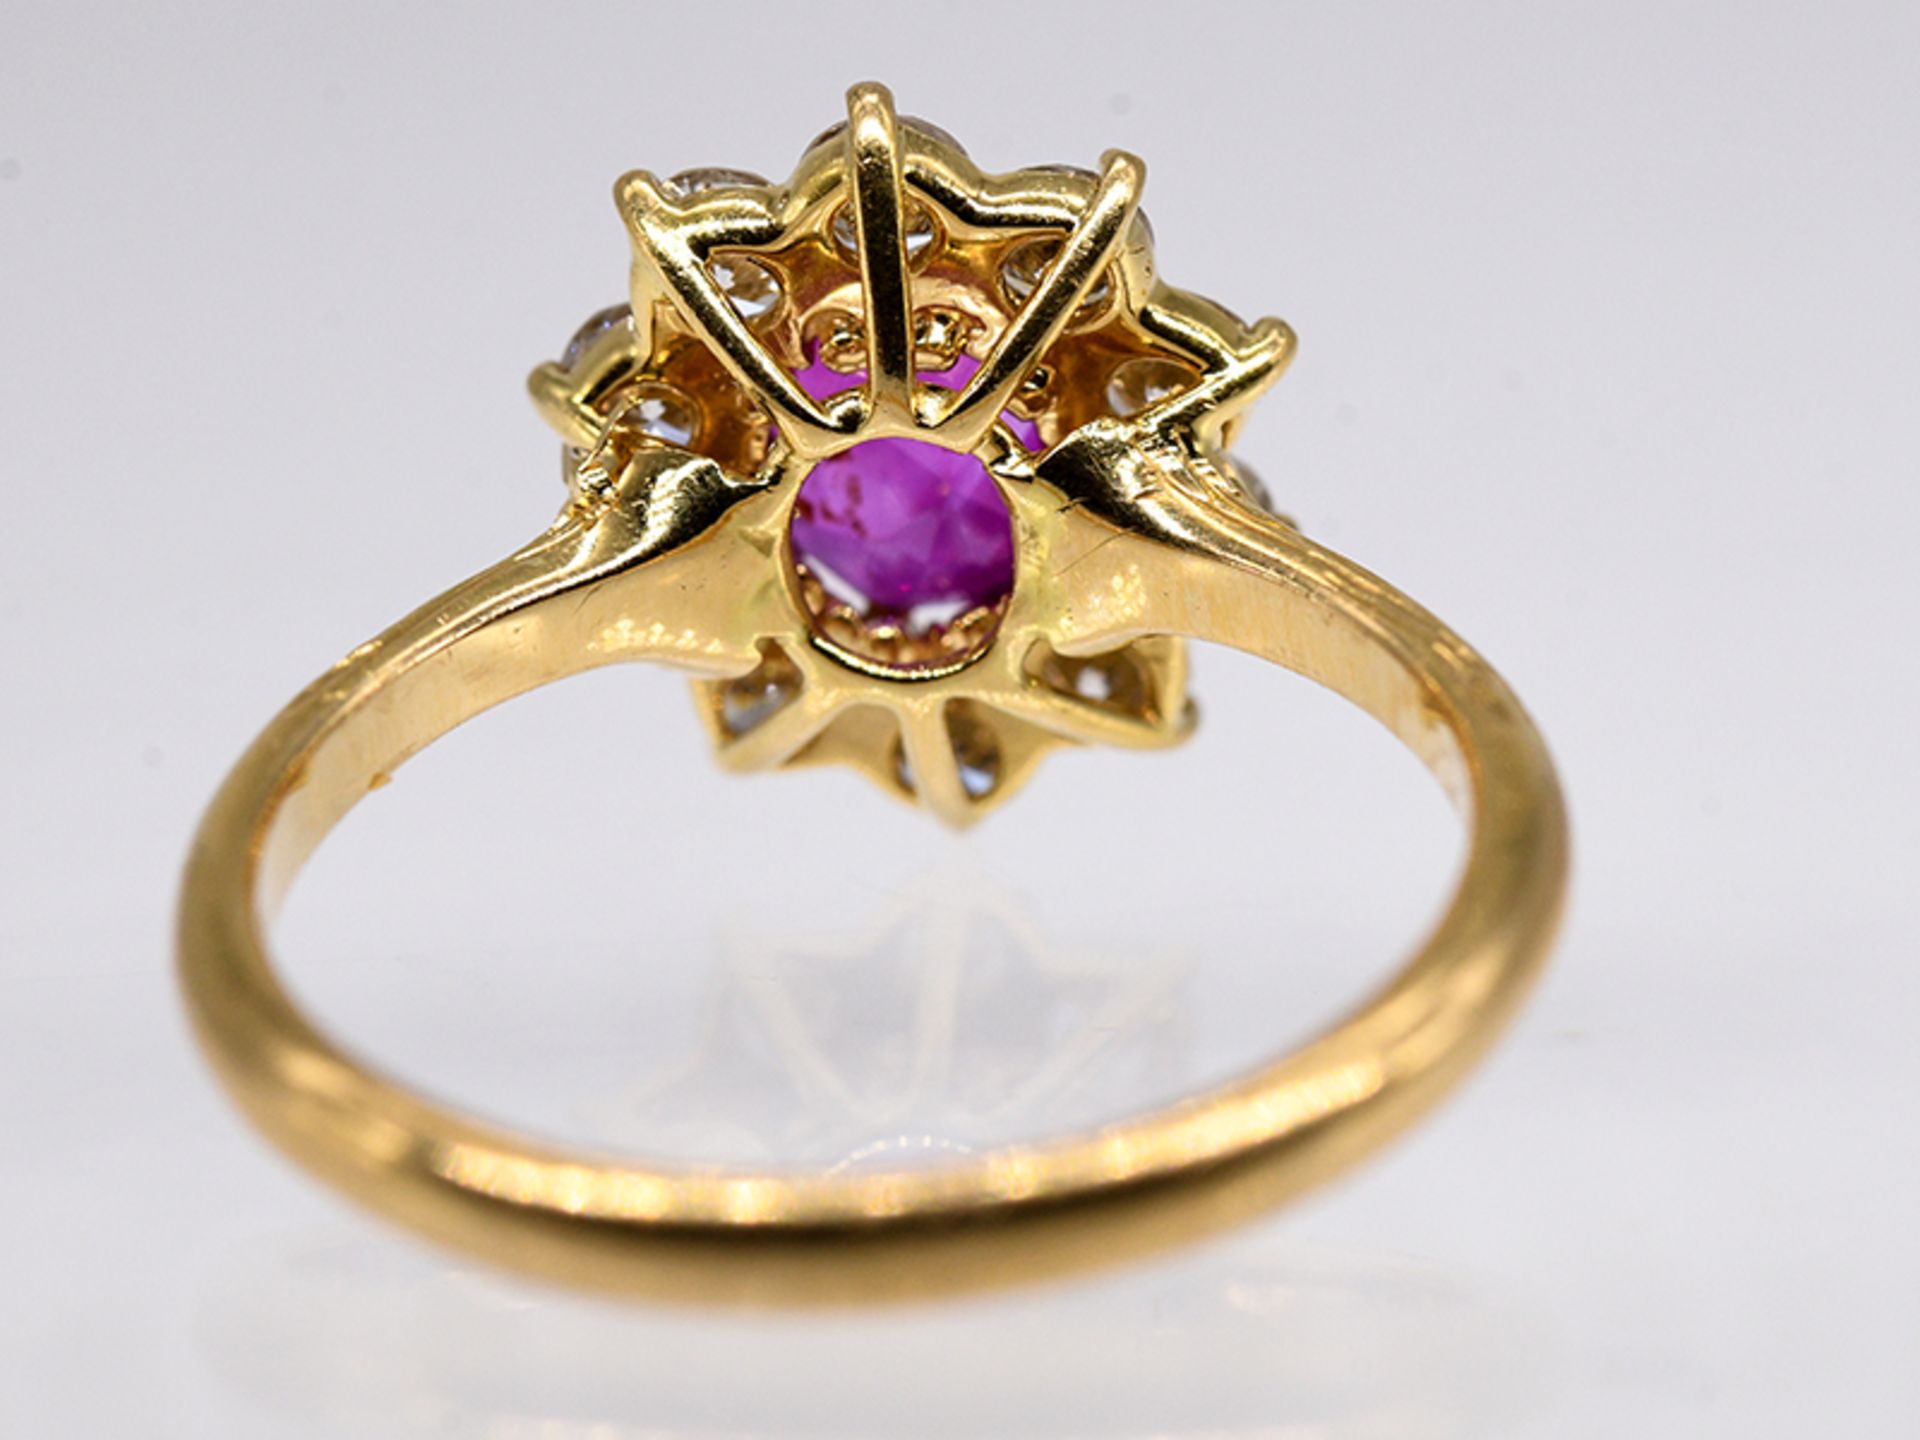 Ring mit Rubin und 10 Brillanten, zus. ca. 1 ct, Juwelier Wilm, Hamburg, 90- er Jahre. br750/- - Image 4 of 4